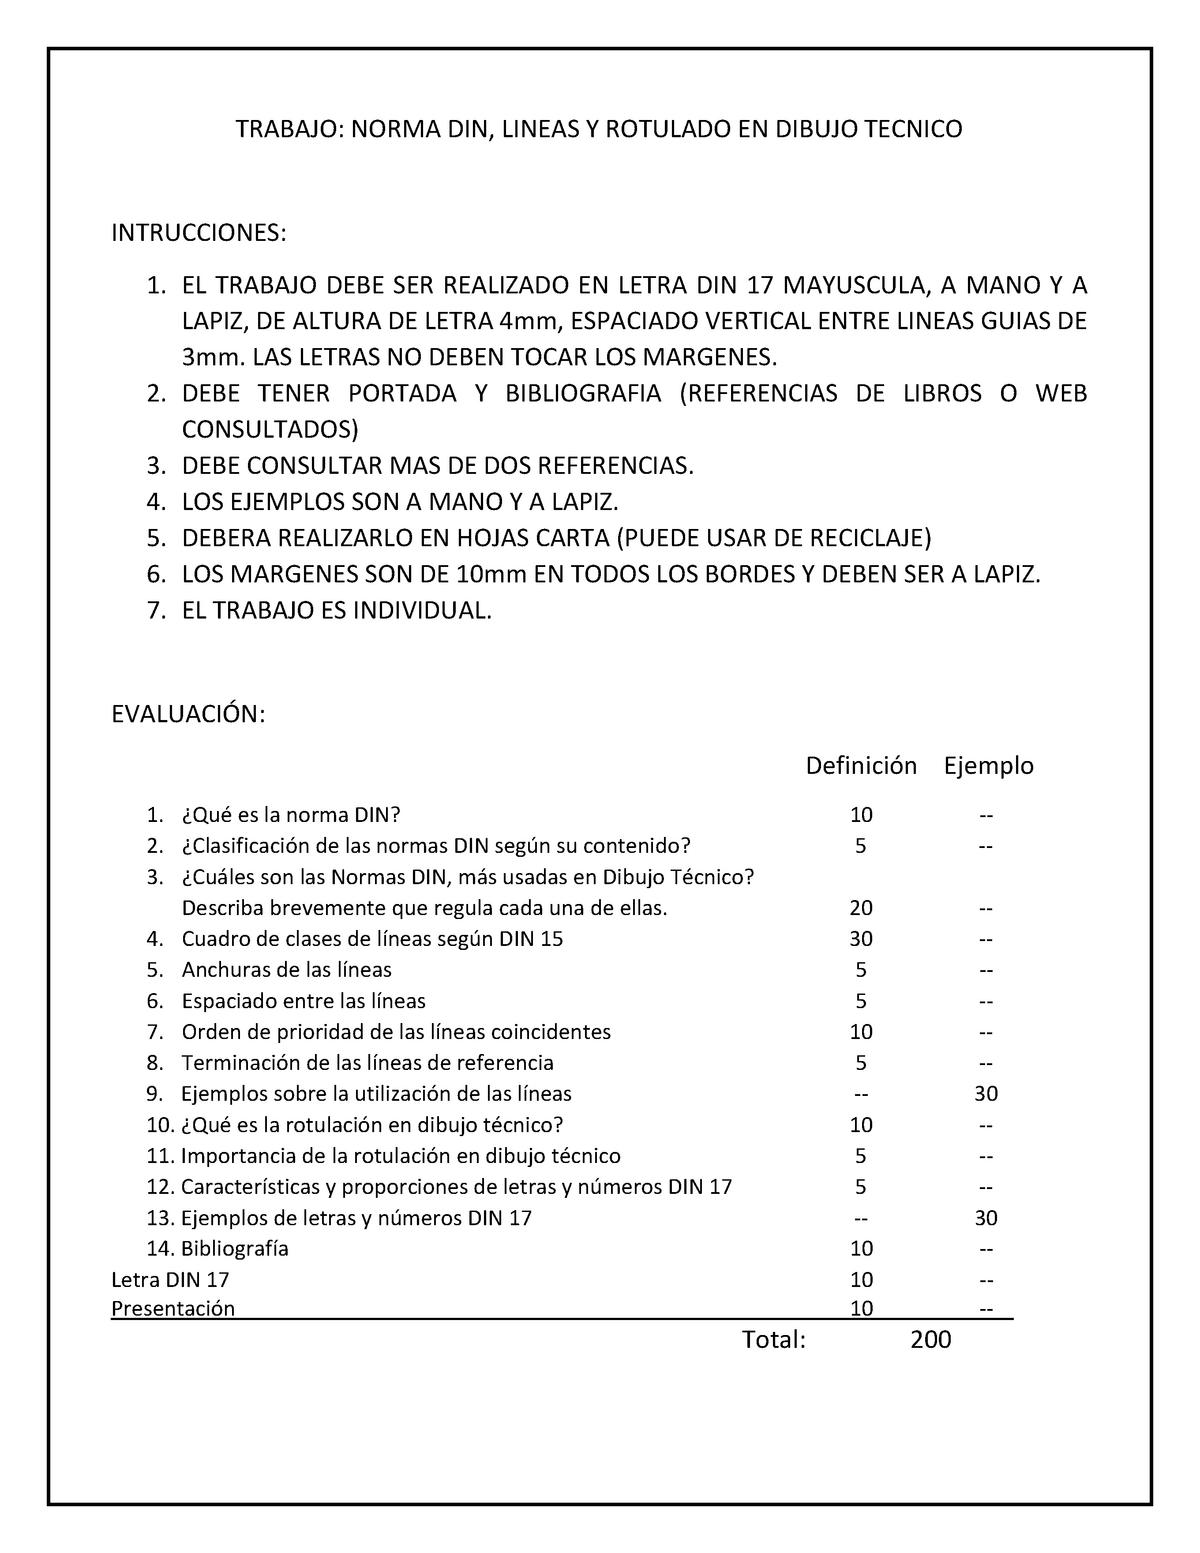 D1 Trabajo 1 Norma, Lineas Y Rotulado - TRABAJO: NORMA DIN, LINEAS Y  ROTULADO EN DIBUJO TECNICO - Studocu